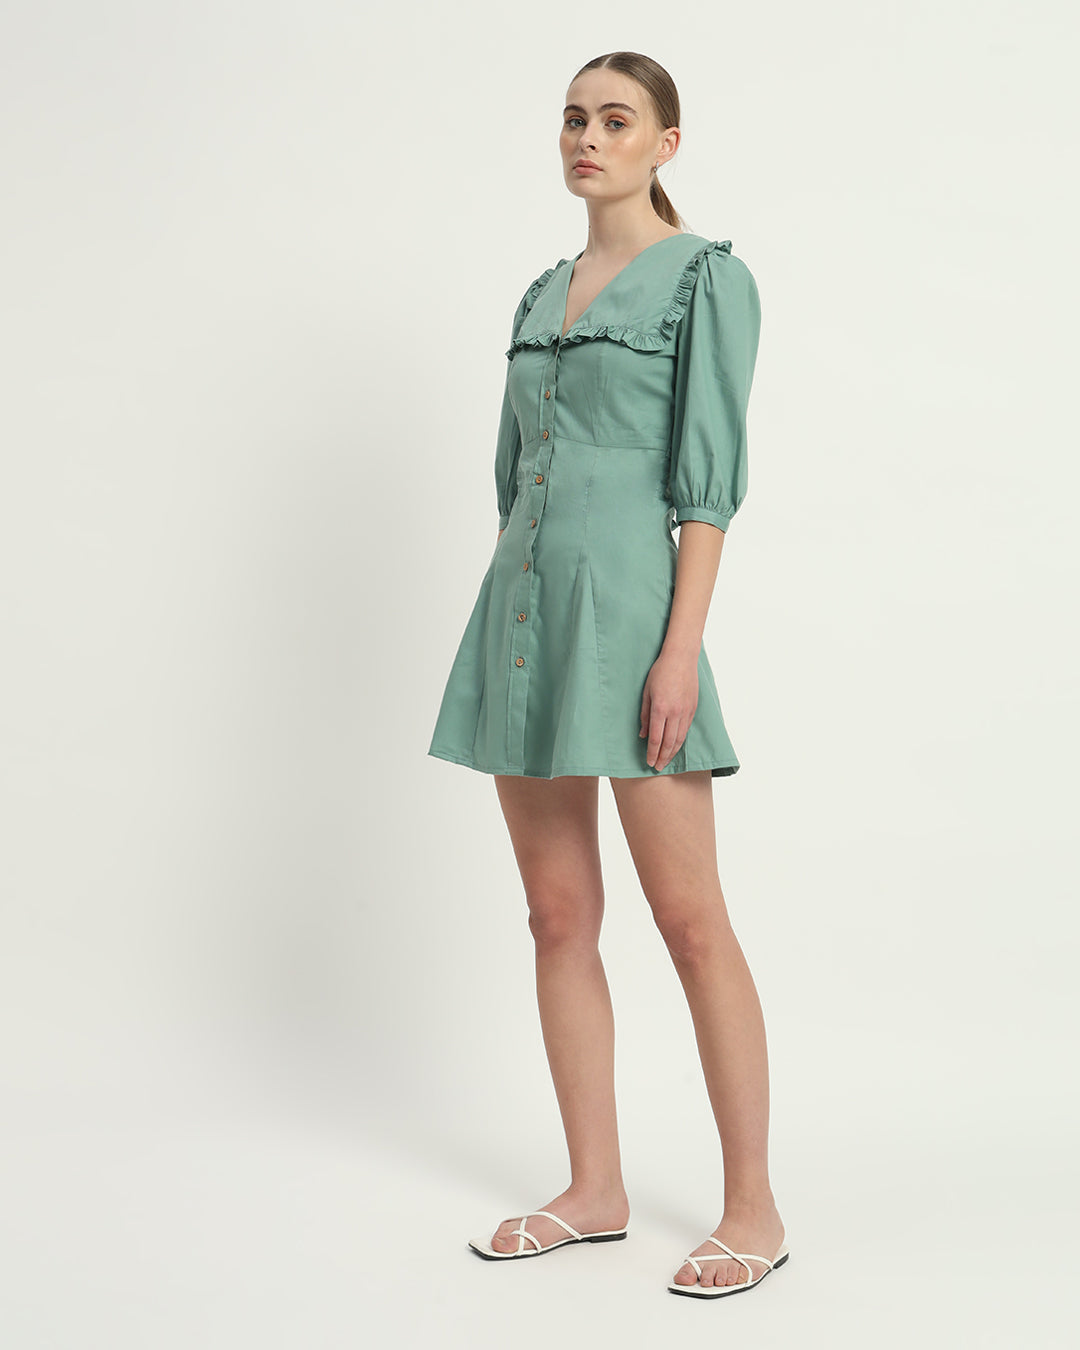 The Isabela Mint Cotton Dress